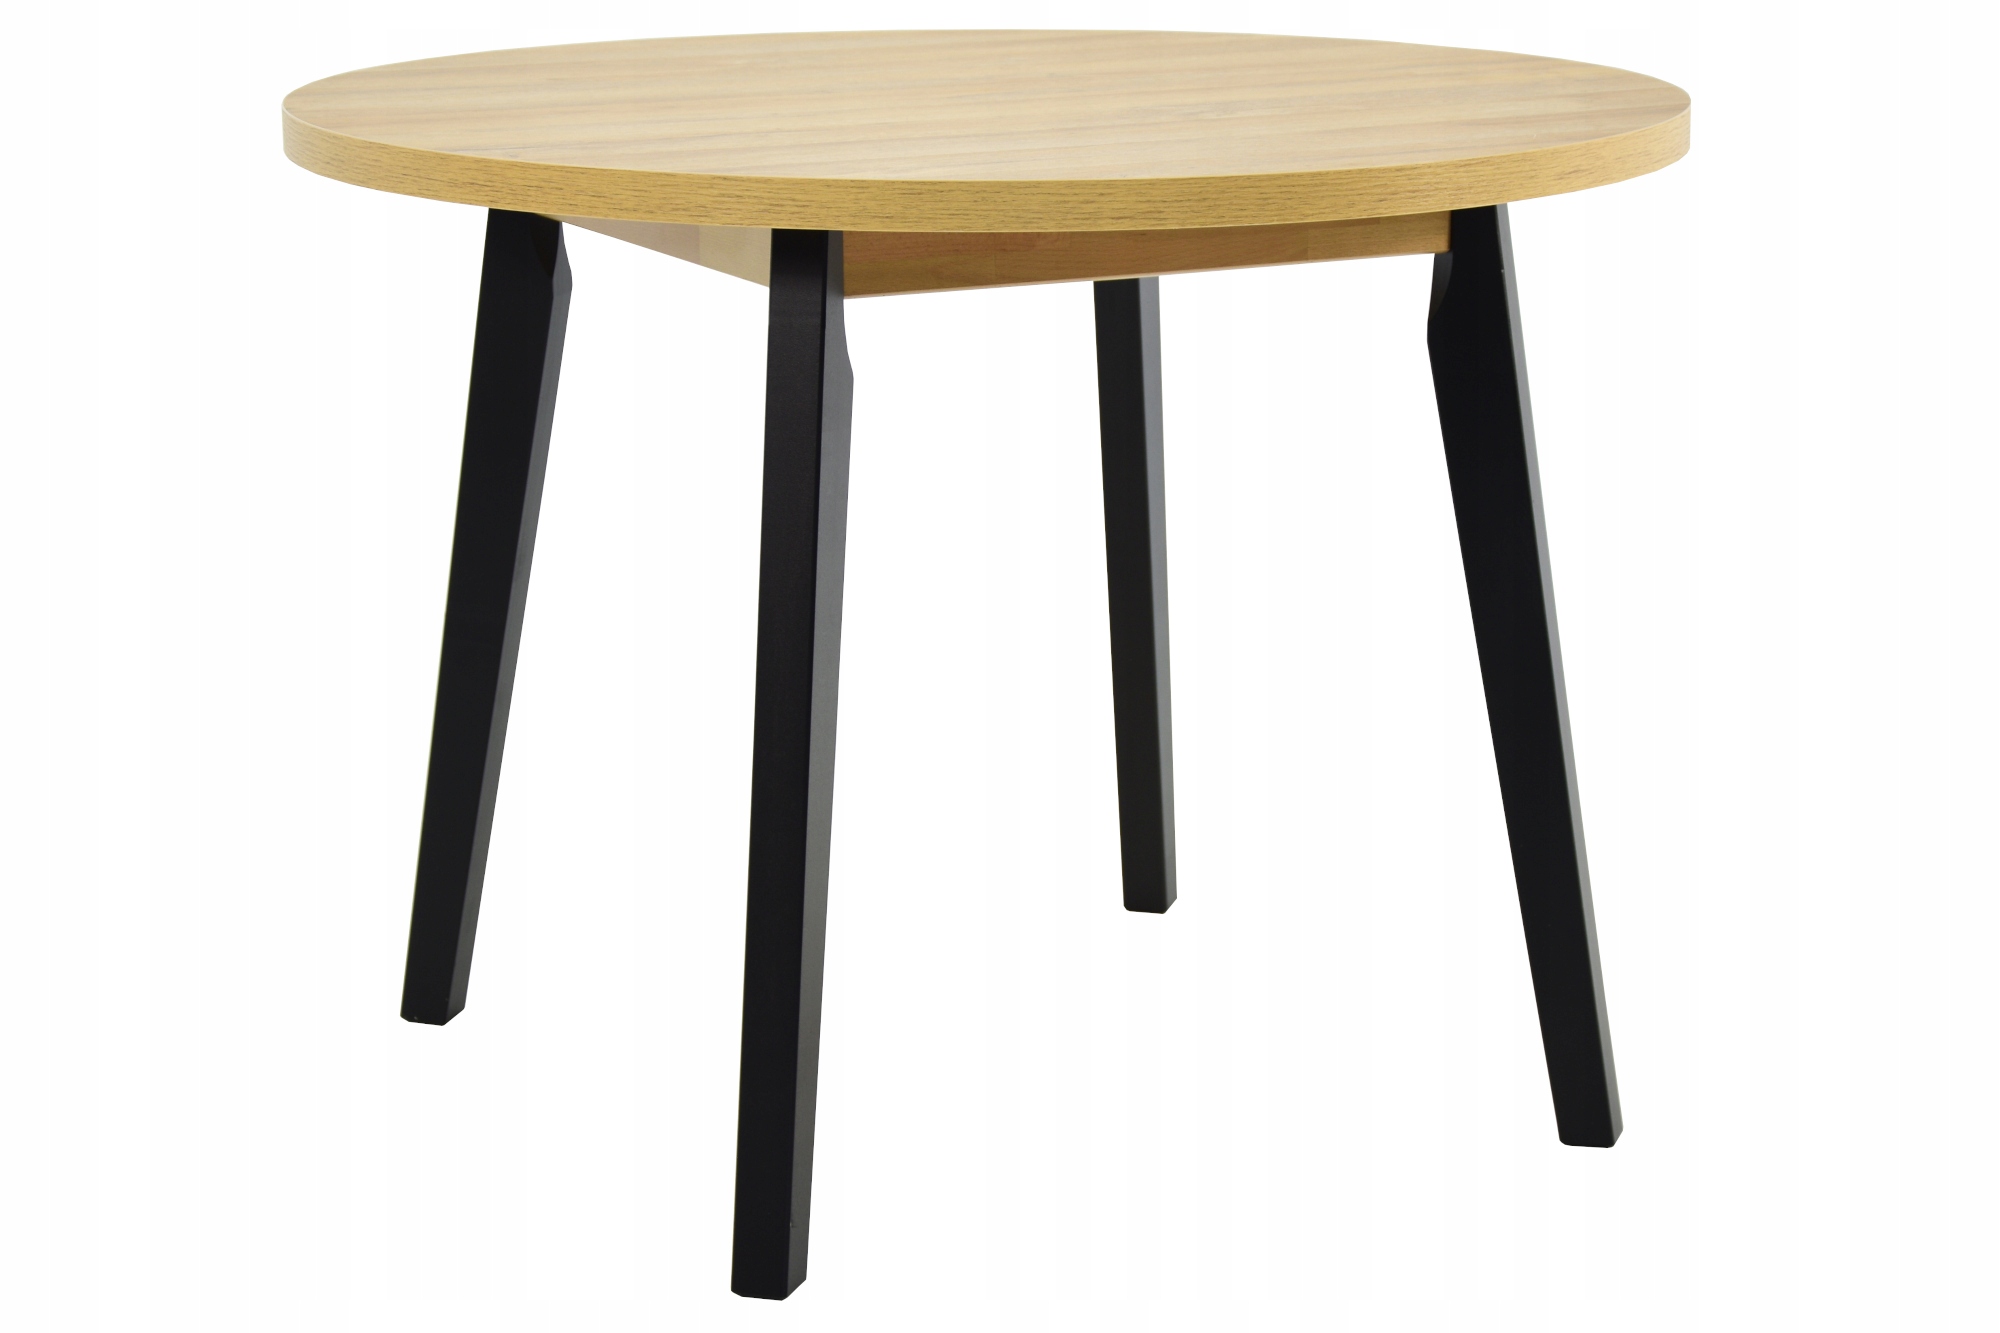 4 скандинавских стула + круглый стол 100 см от Interni